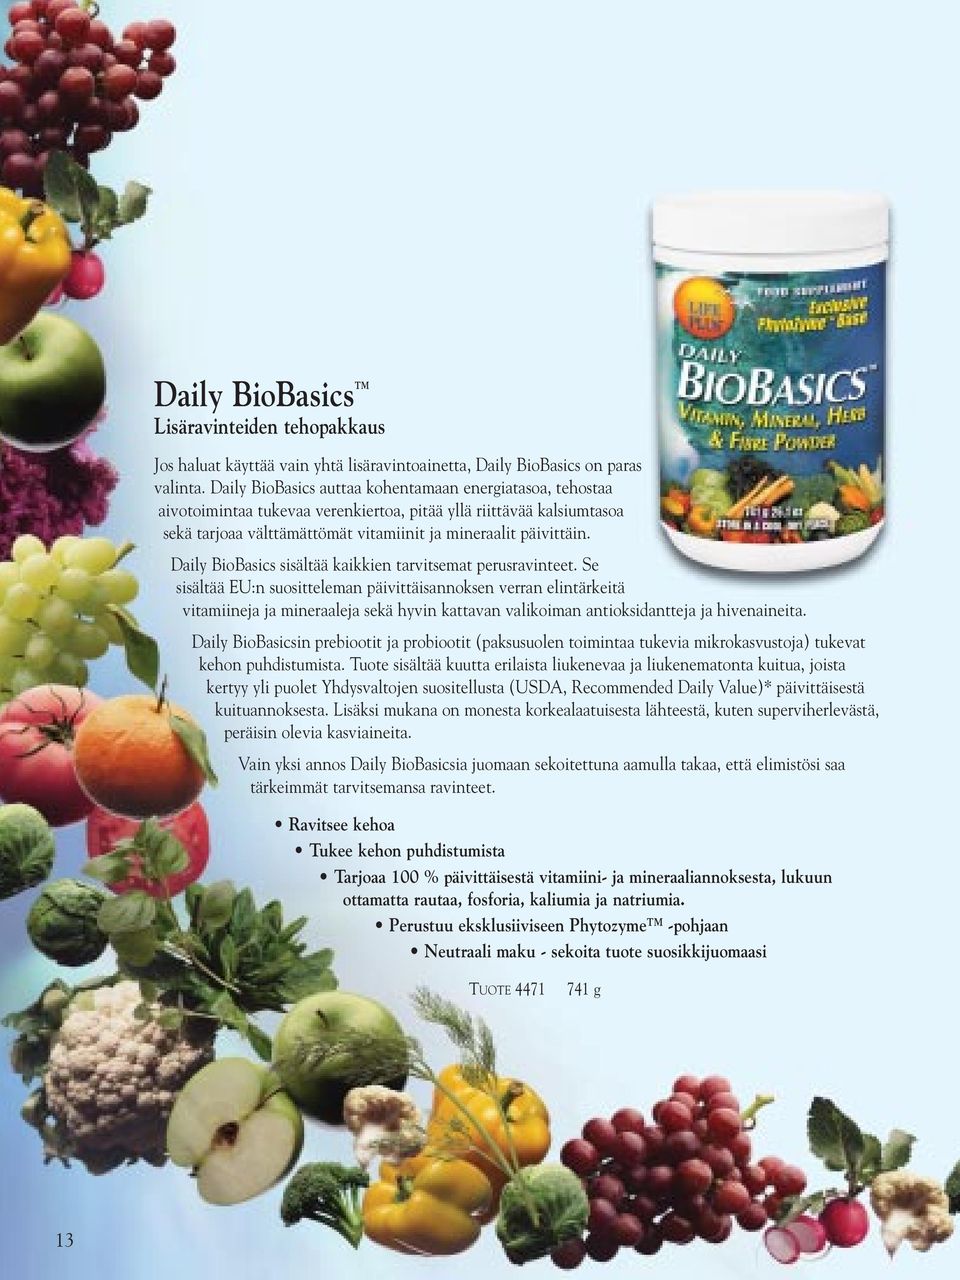 Daily BioBasics sisältää kaikkien tarvitsemat perusravinteet.